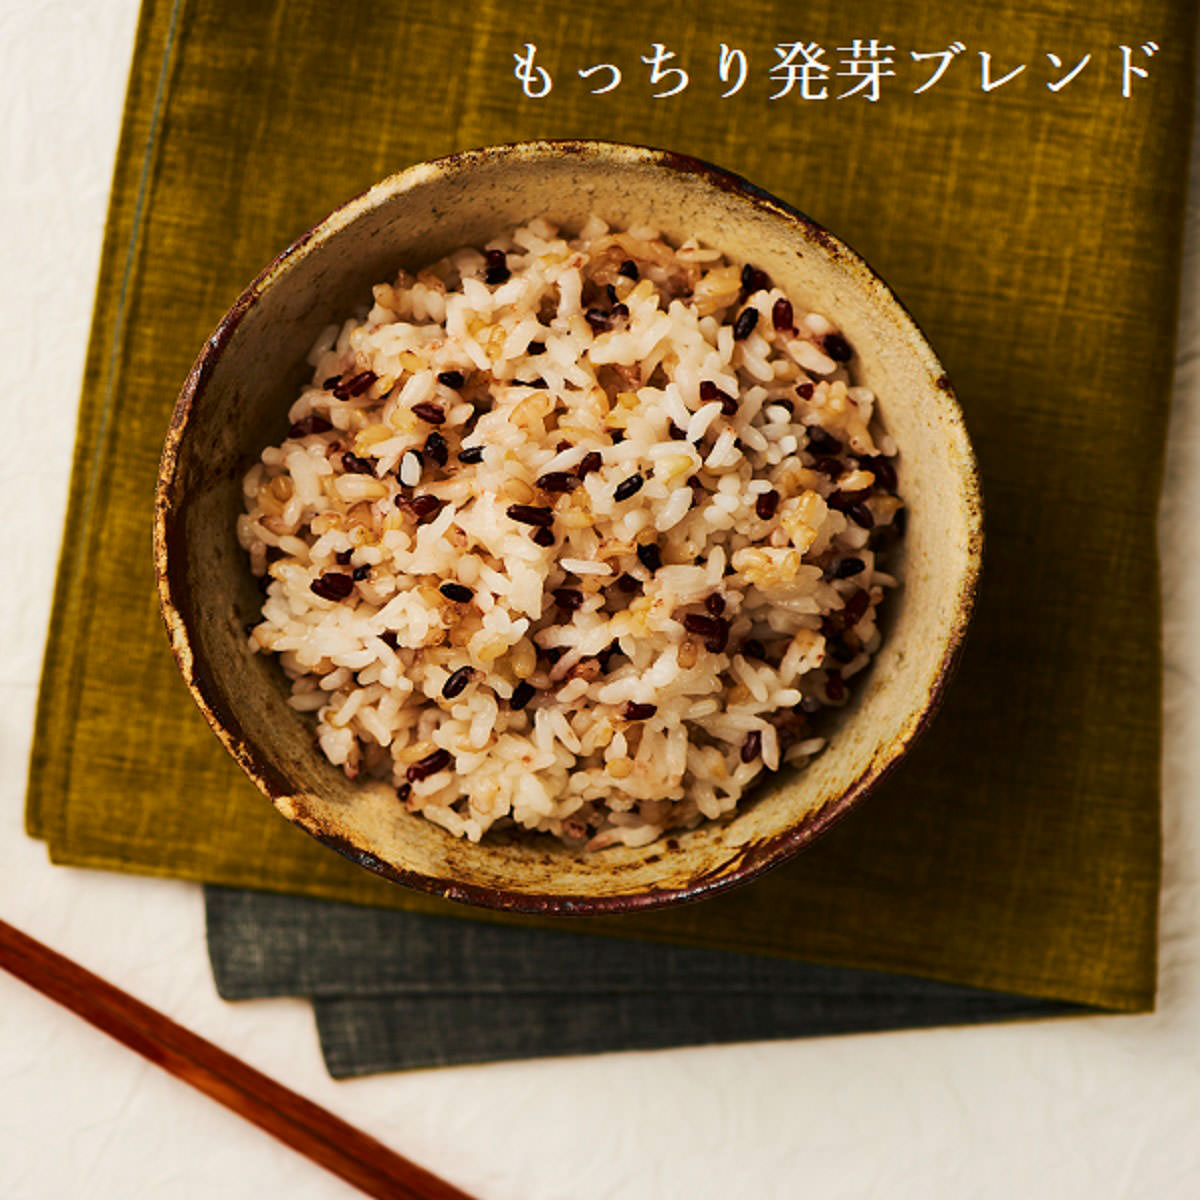 期間限定特別価格 毎日の食卓に 別倉庫からの配送 日本の美味しいお米をお取り寄せ 国産発芽玄米ごはん160g×18個